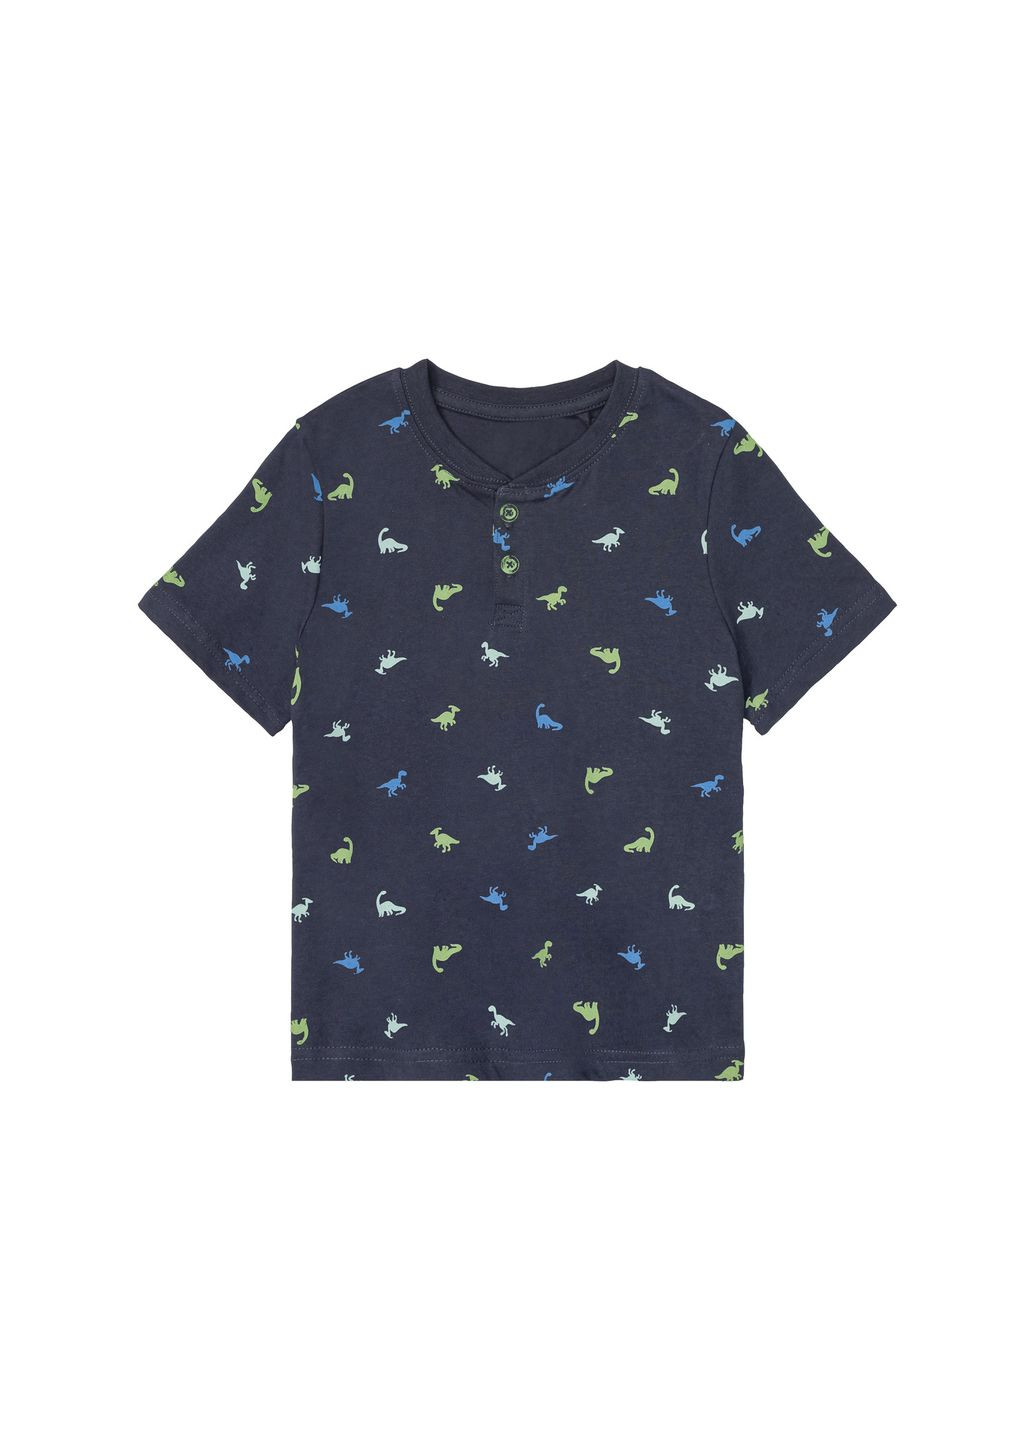 Темно-синя демісезонна футболка з планкою на гудзиках для хлопчика 403695-1 темно-синій Lupilu